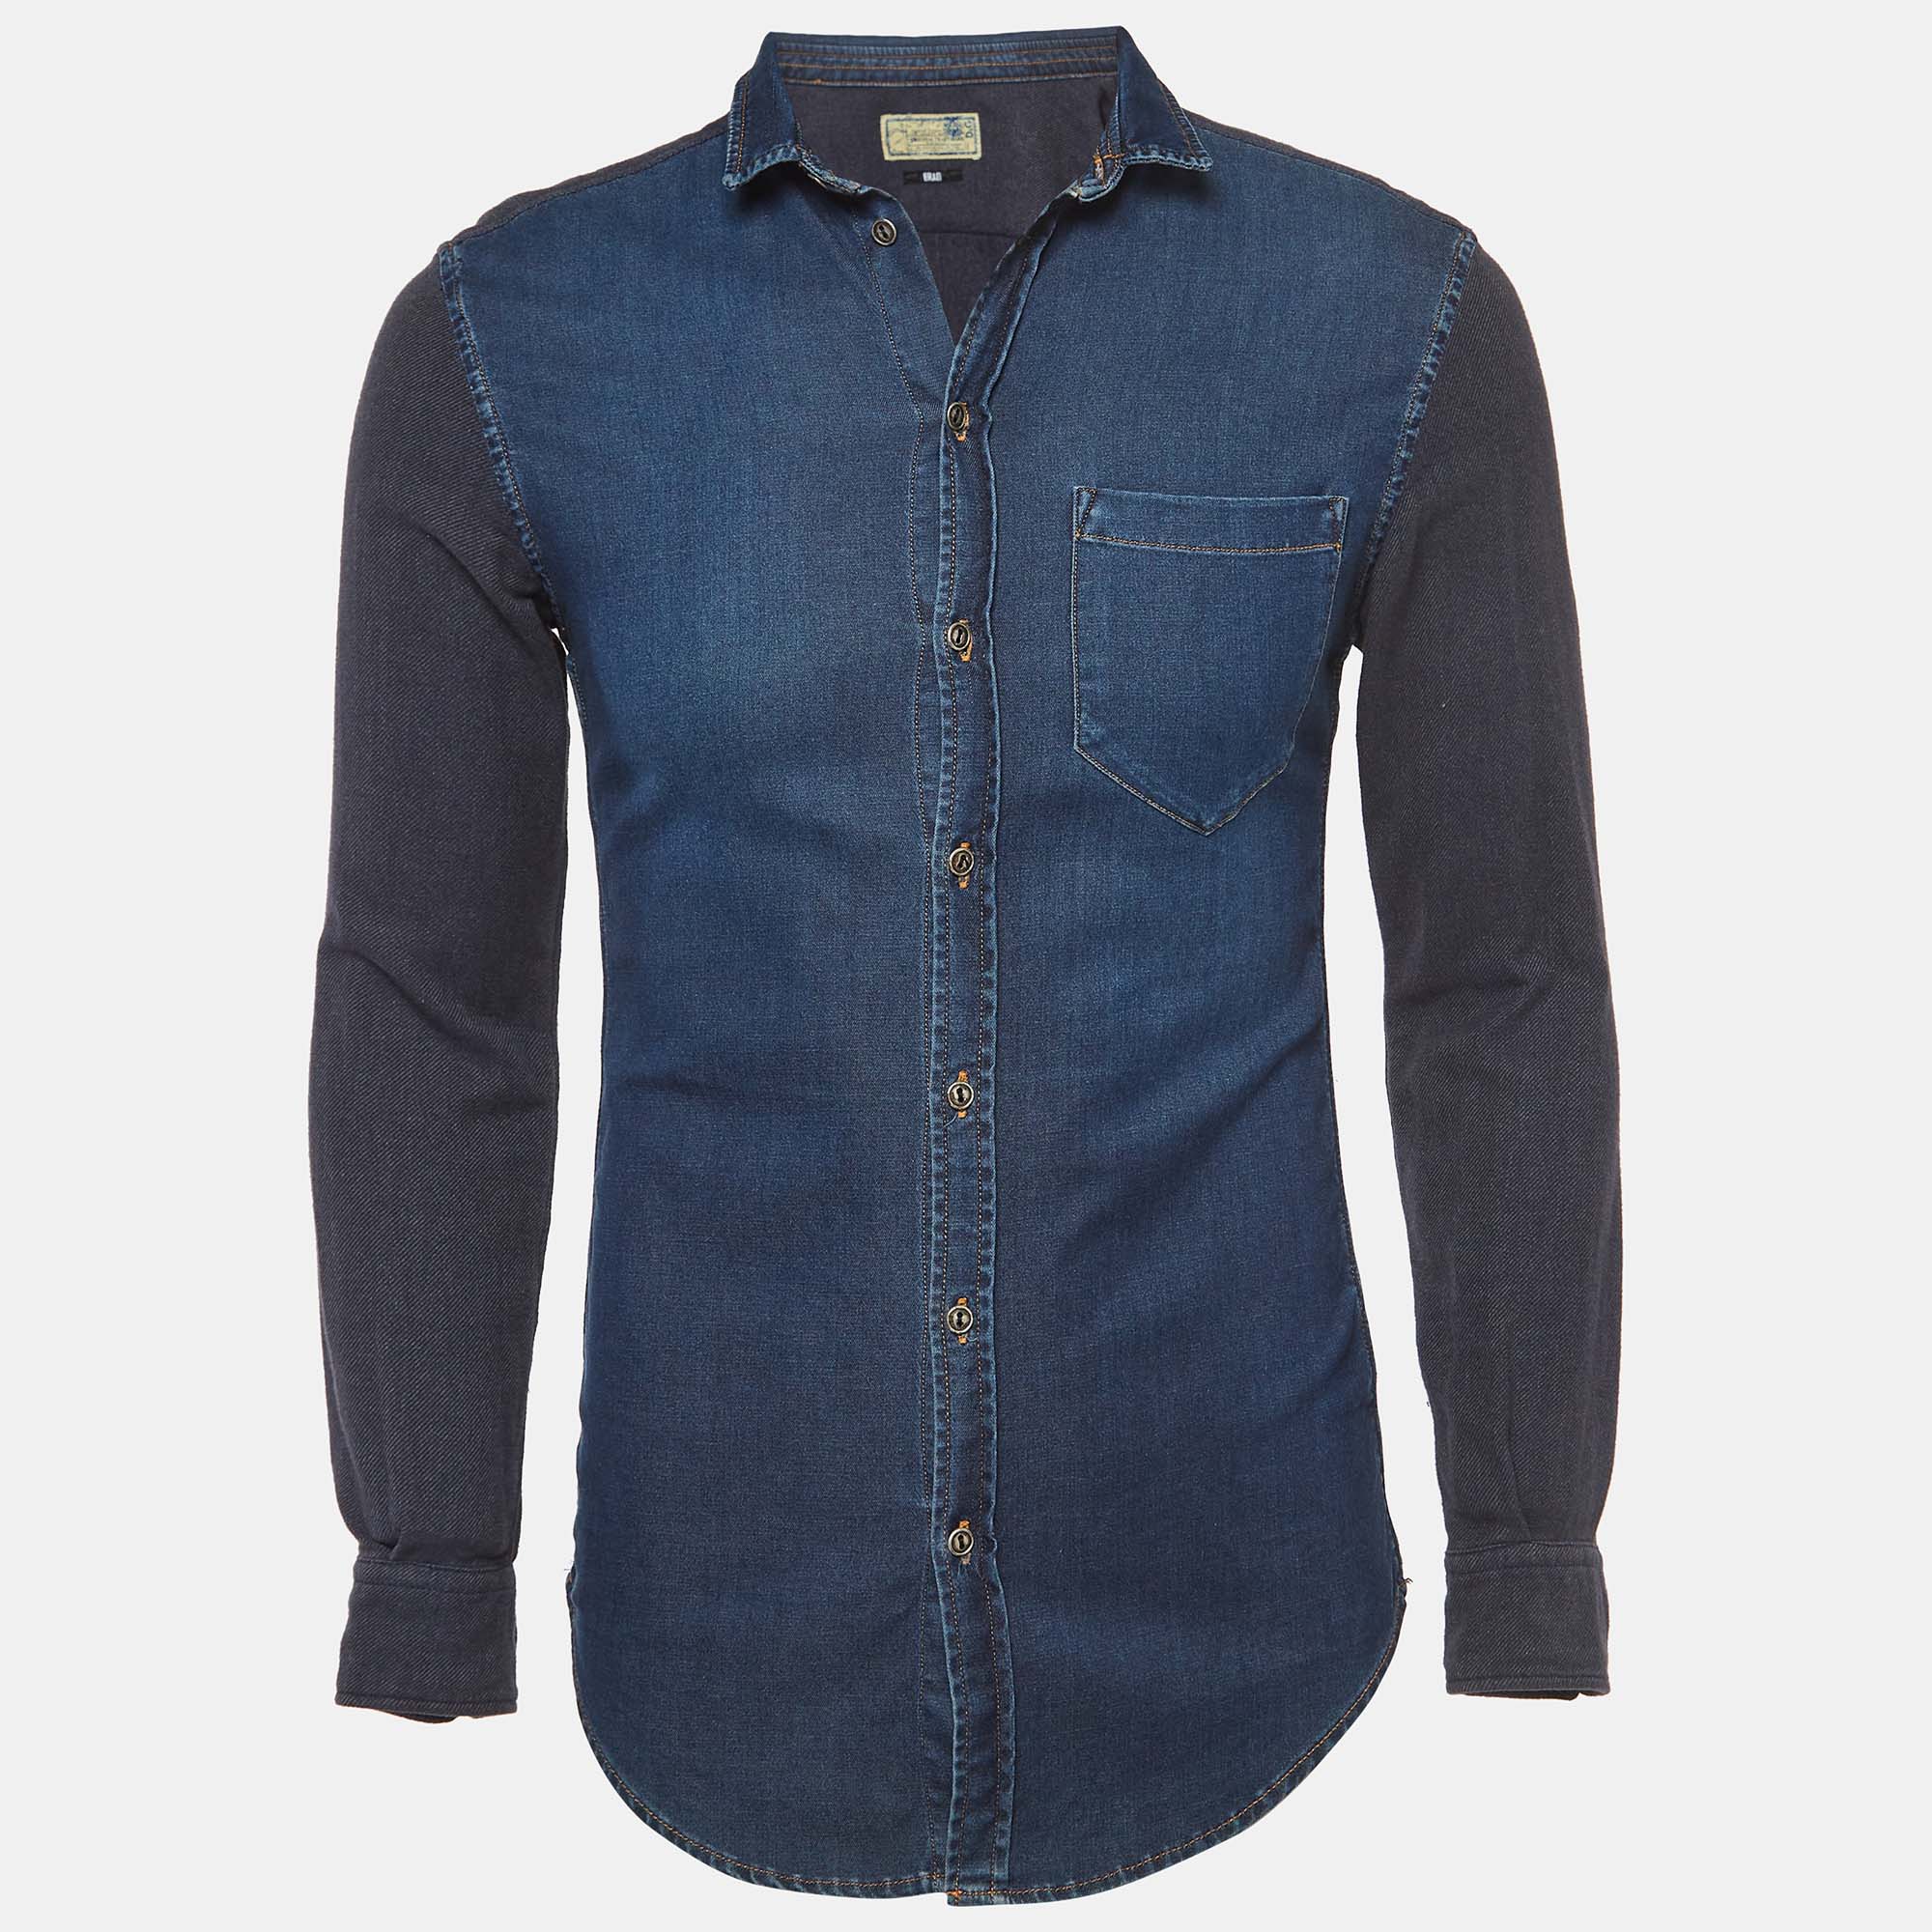 D&g brad blue denim button front full sleeve shirt s